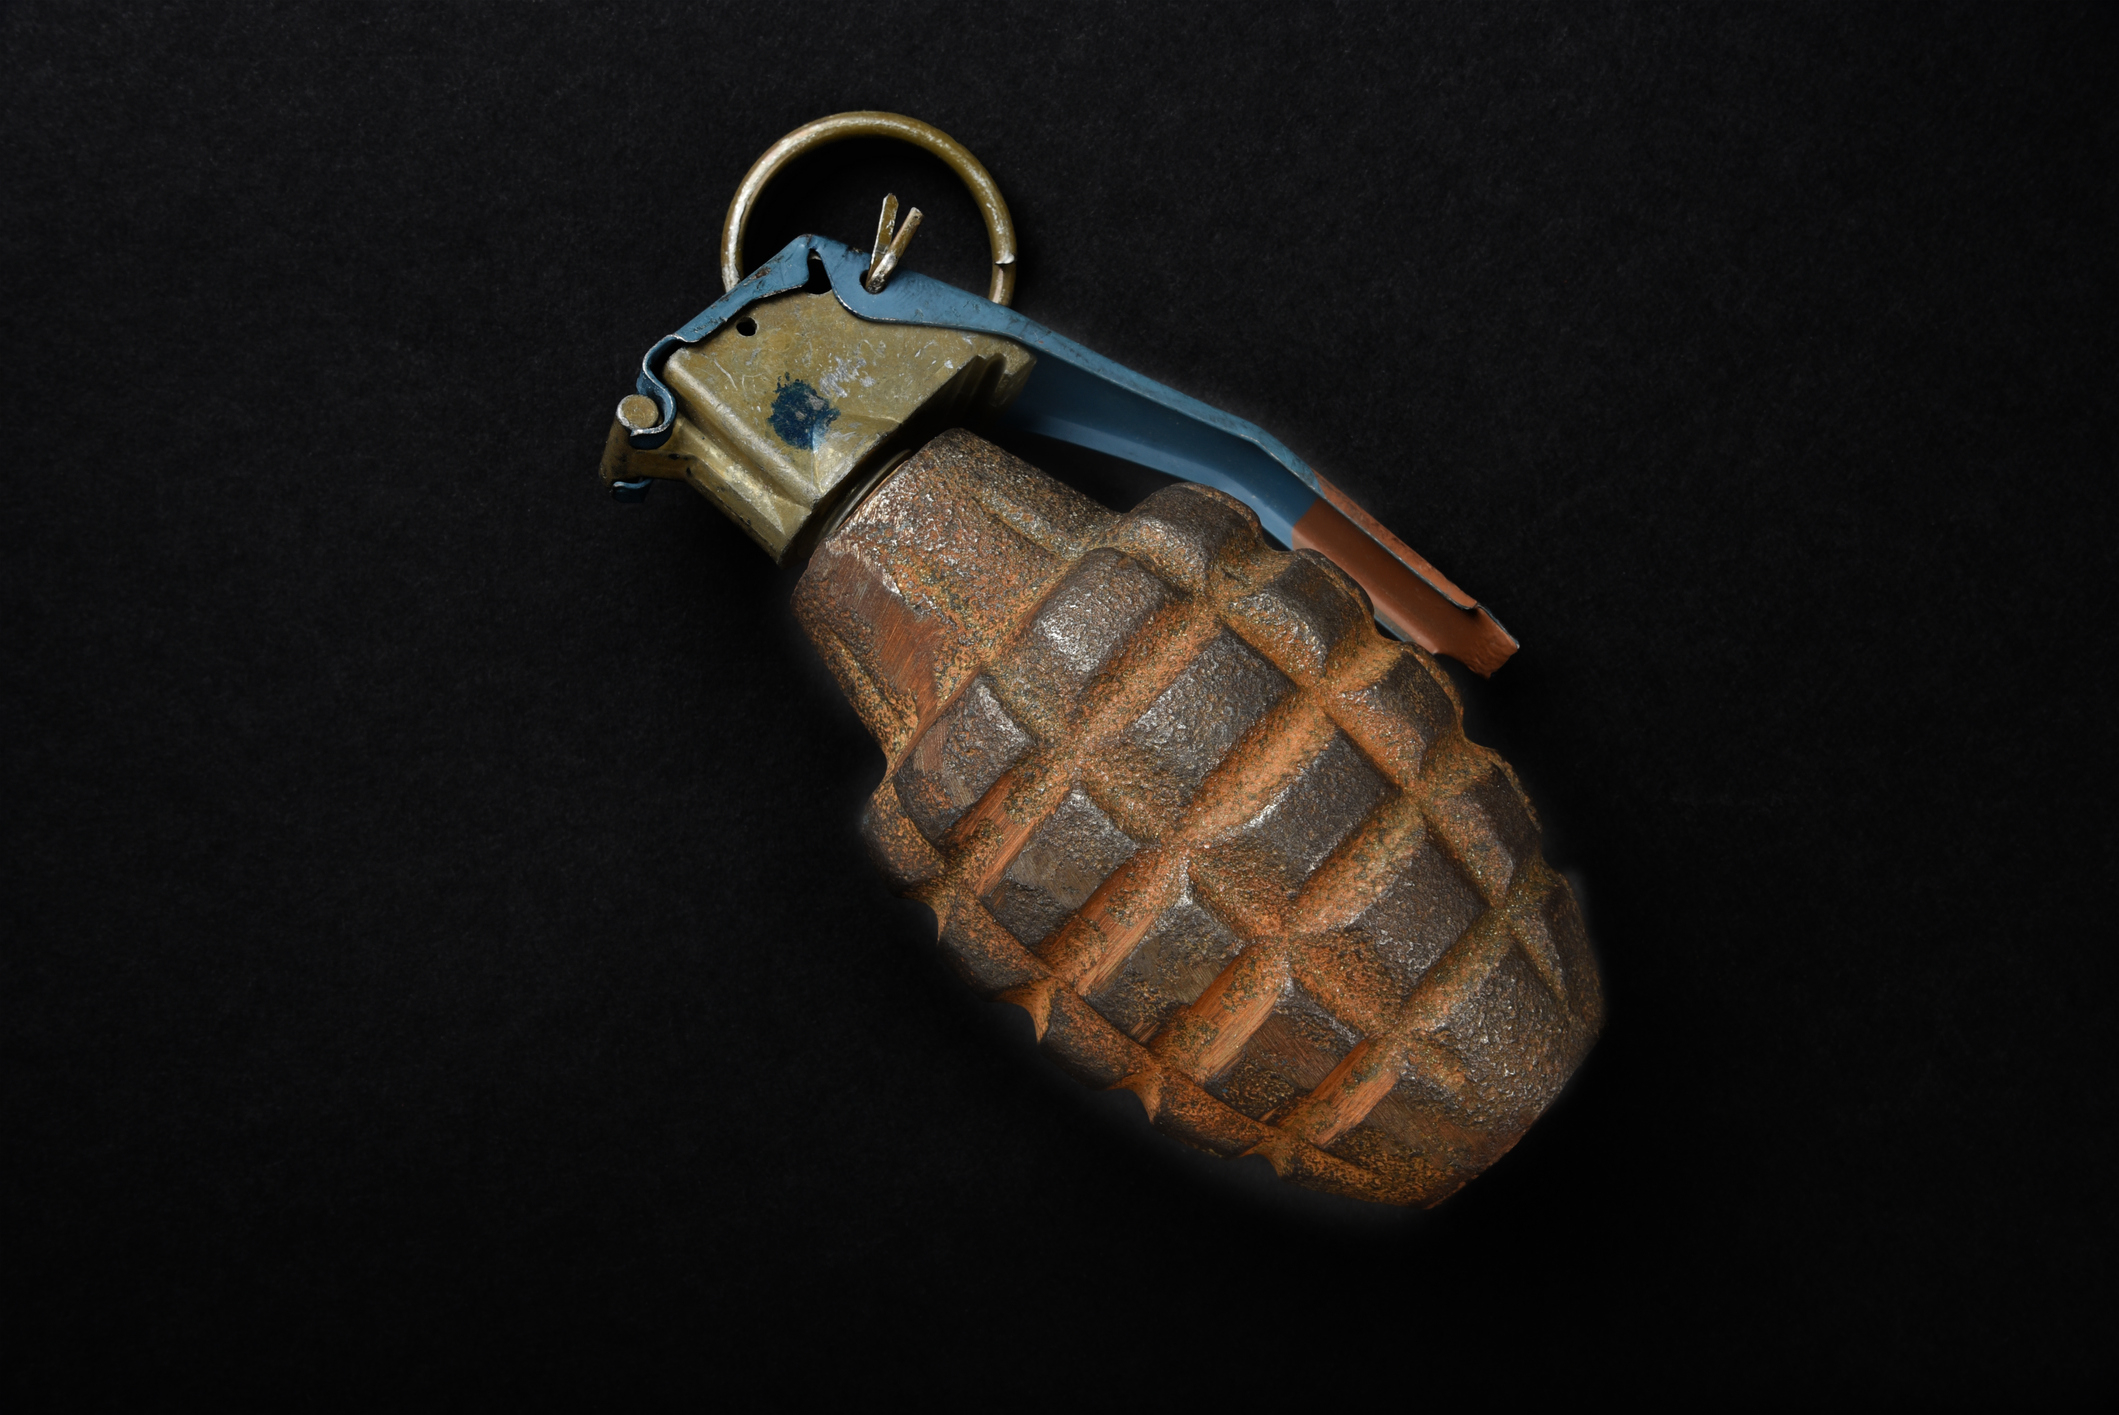 a grenade